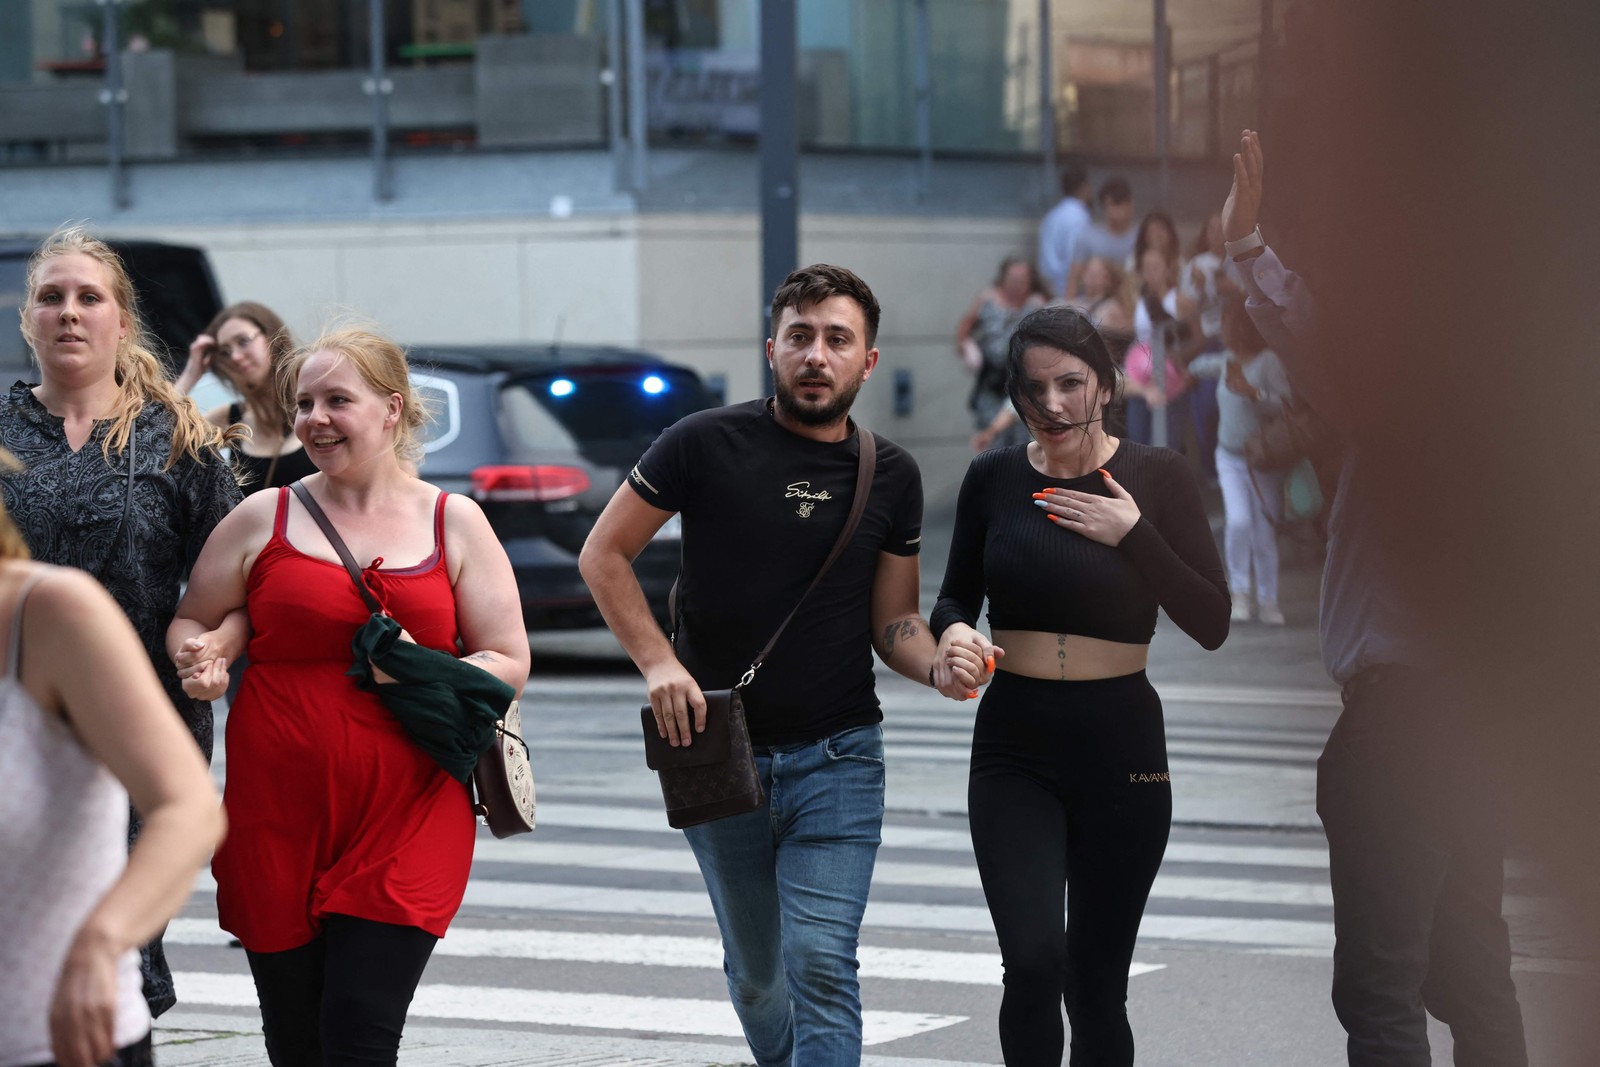 Pessoas são vistas correndo durante a evacuação do centro comercial em Copenhague — Foto: Olafur Steinar Gestsson / Ritzau Scanpix / AFP